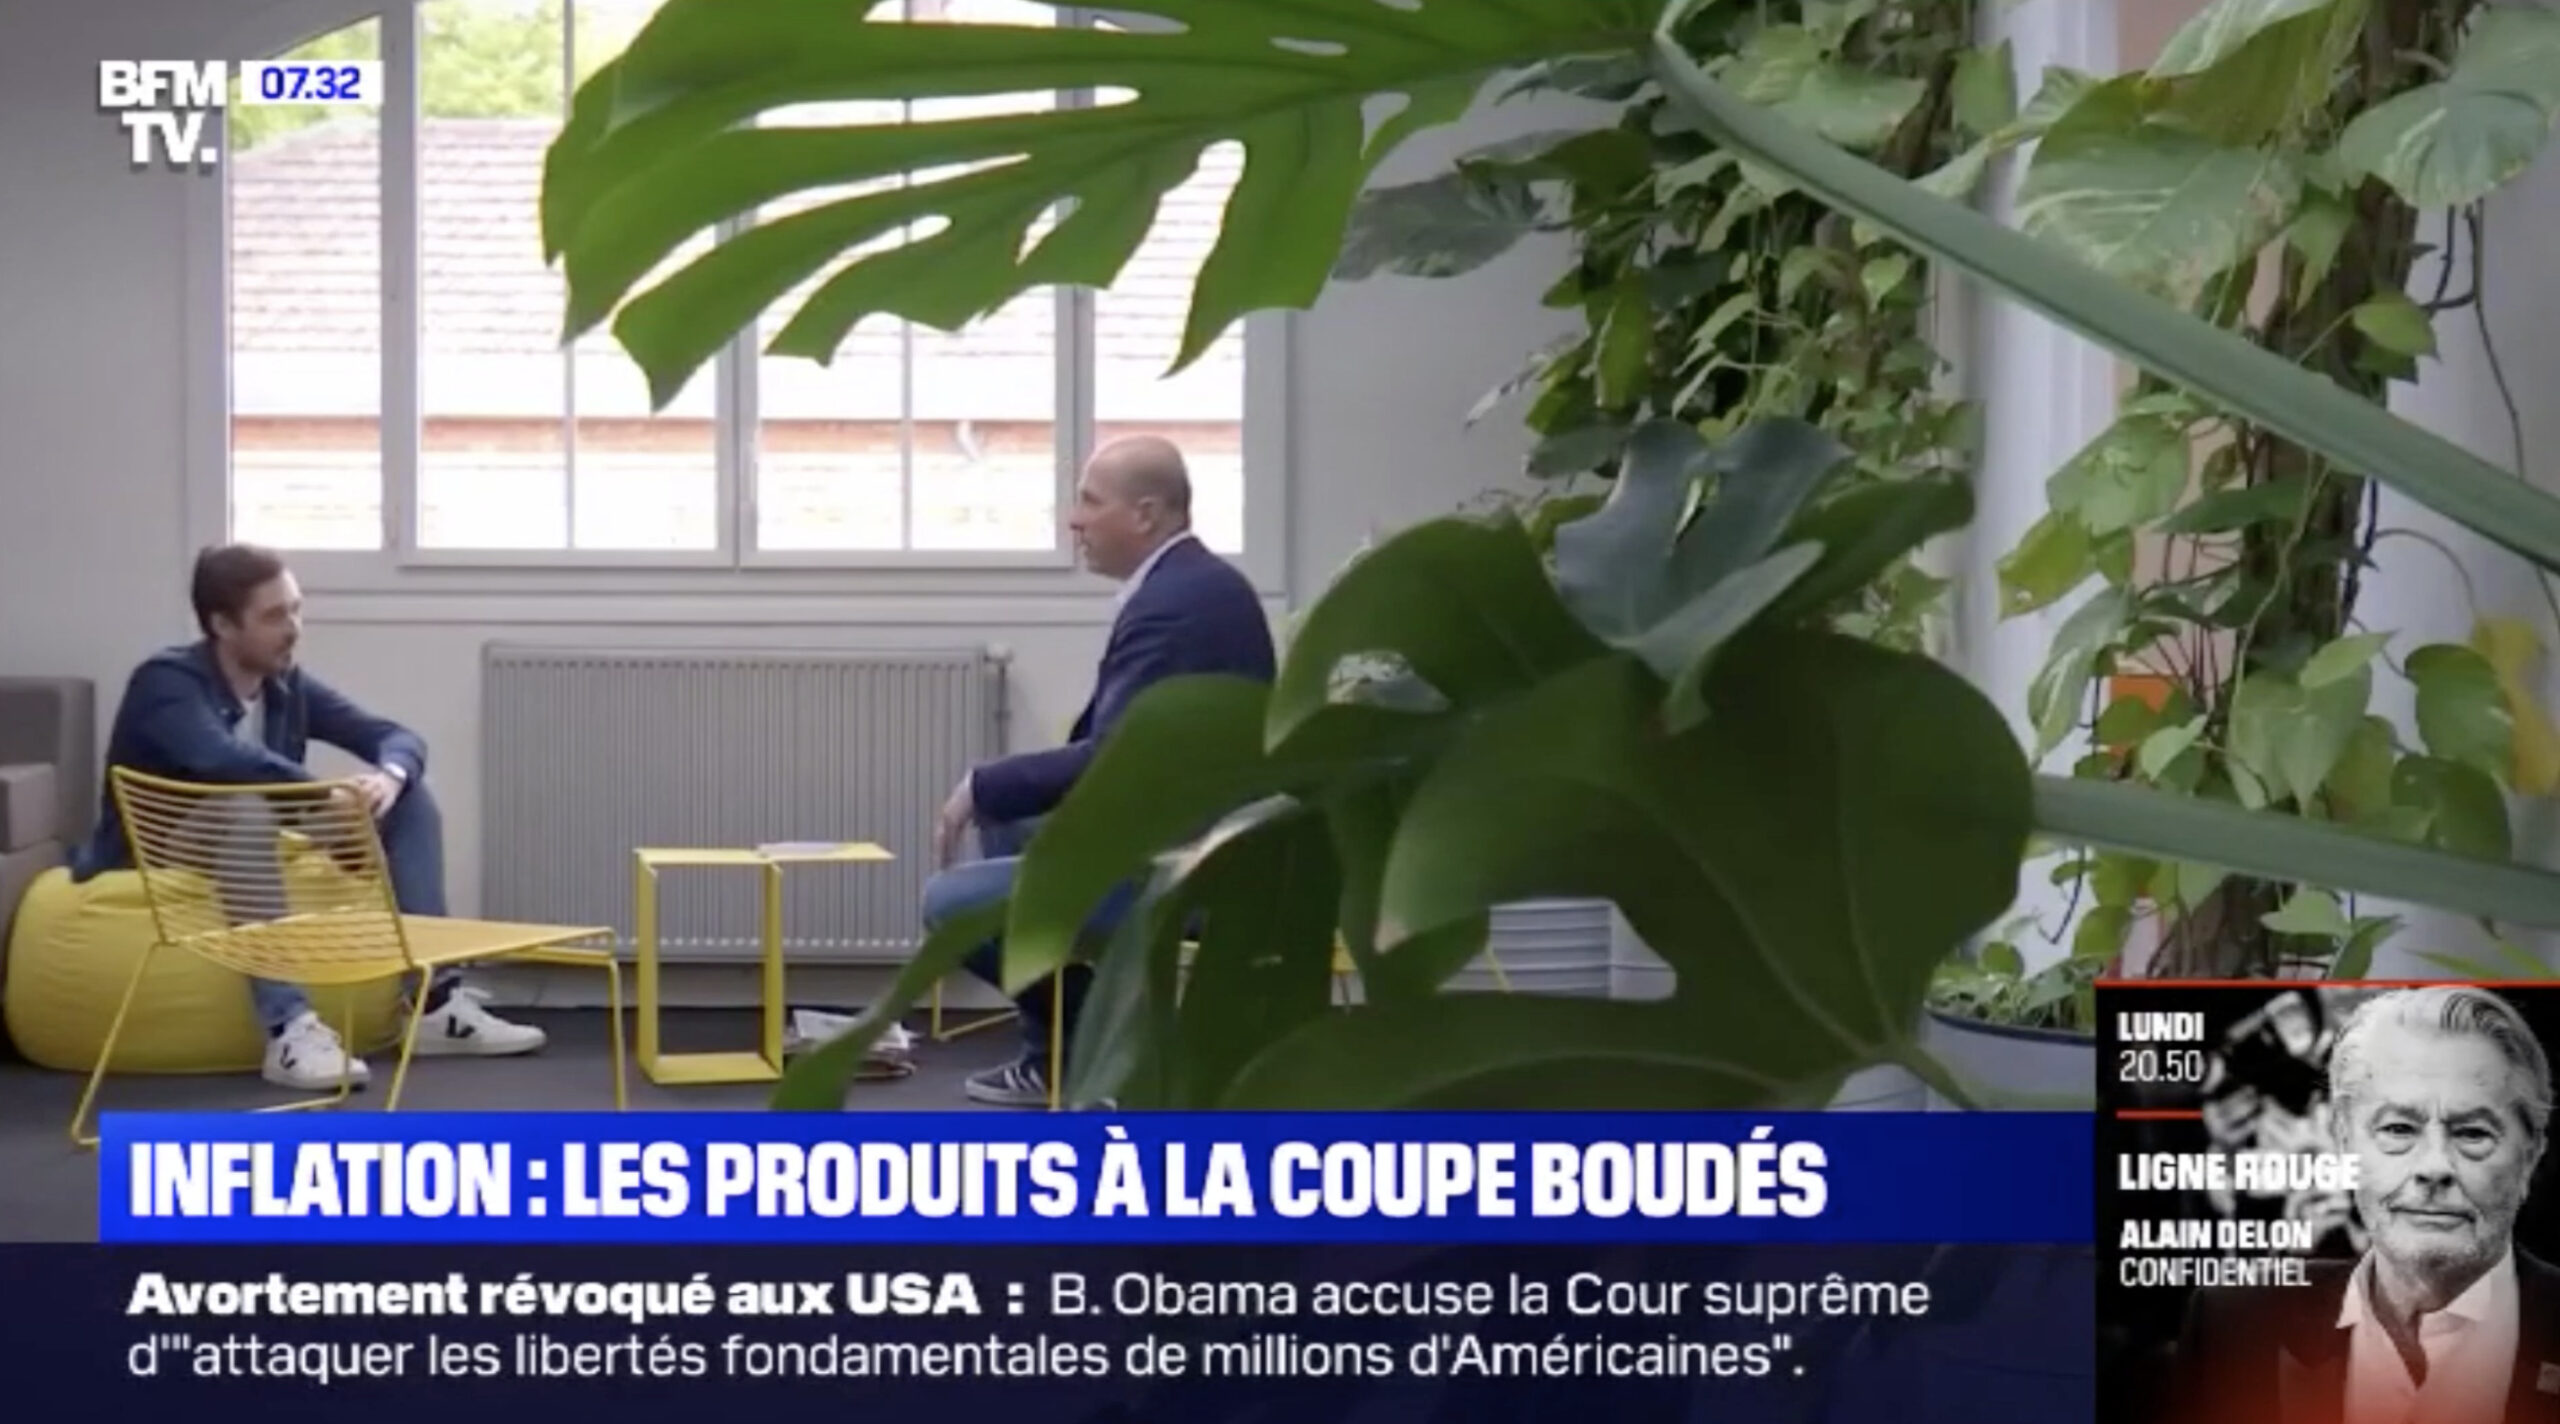 Pouvoir d’achat : Les Français boudent les produit à la coupe / BFM TV